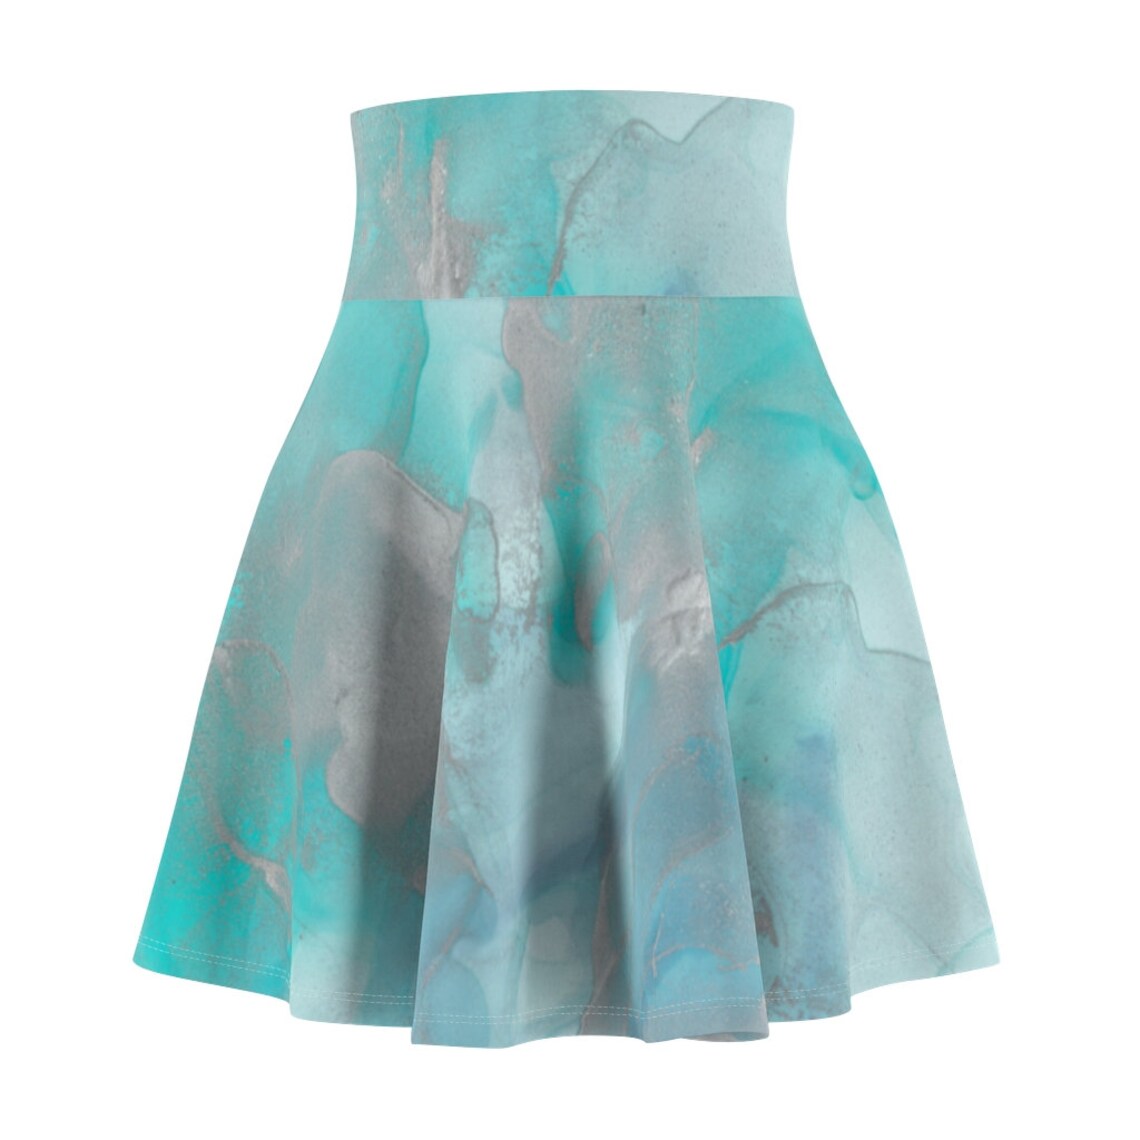 Turquoise Skirt Aqua Skirt Skater Skirt Blue Skater Skirt | Etsy